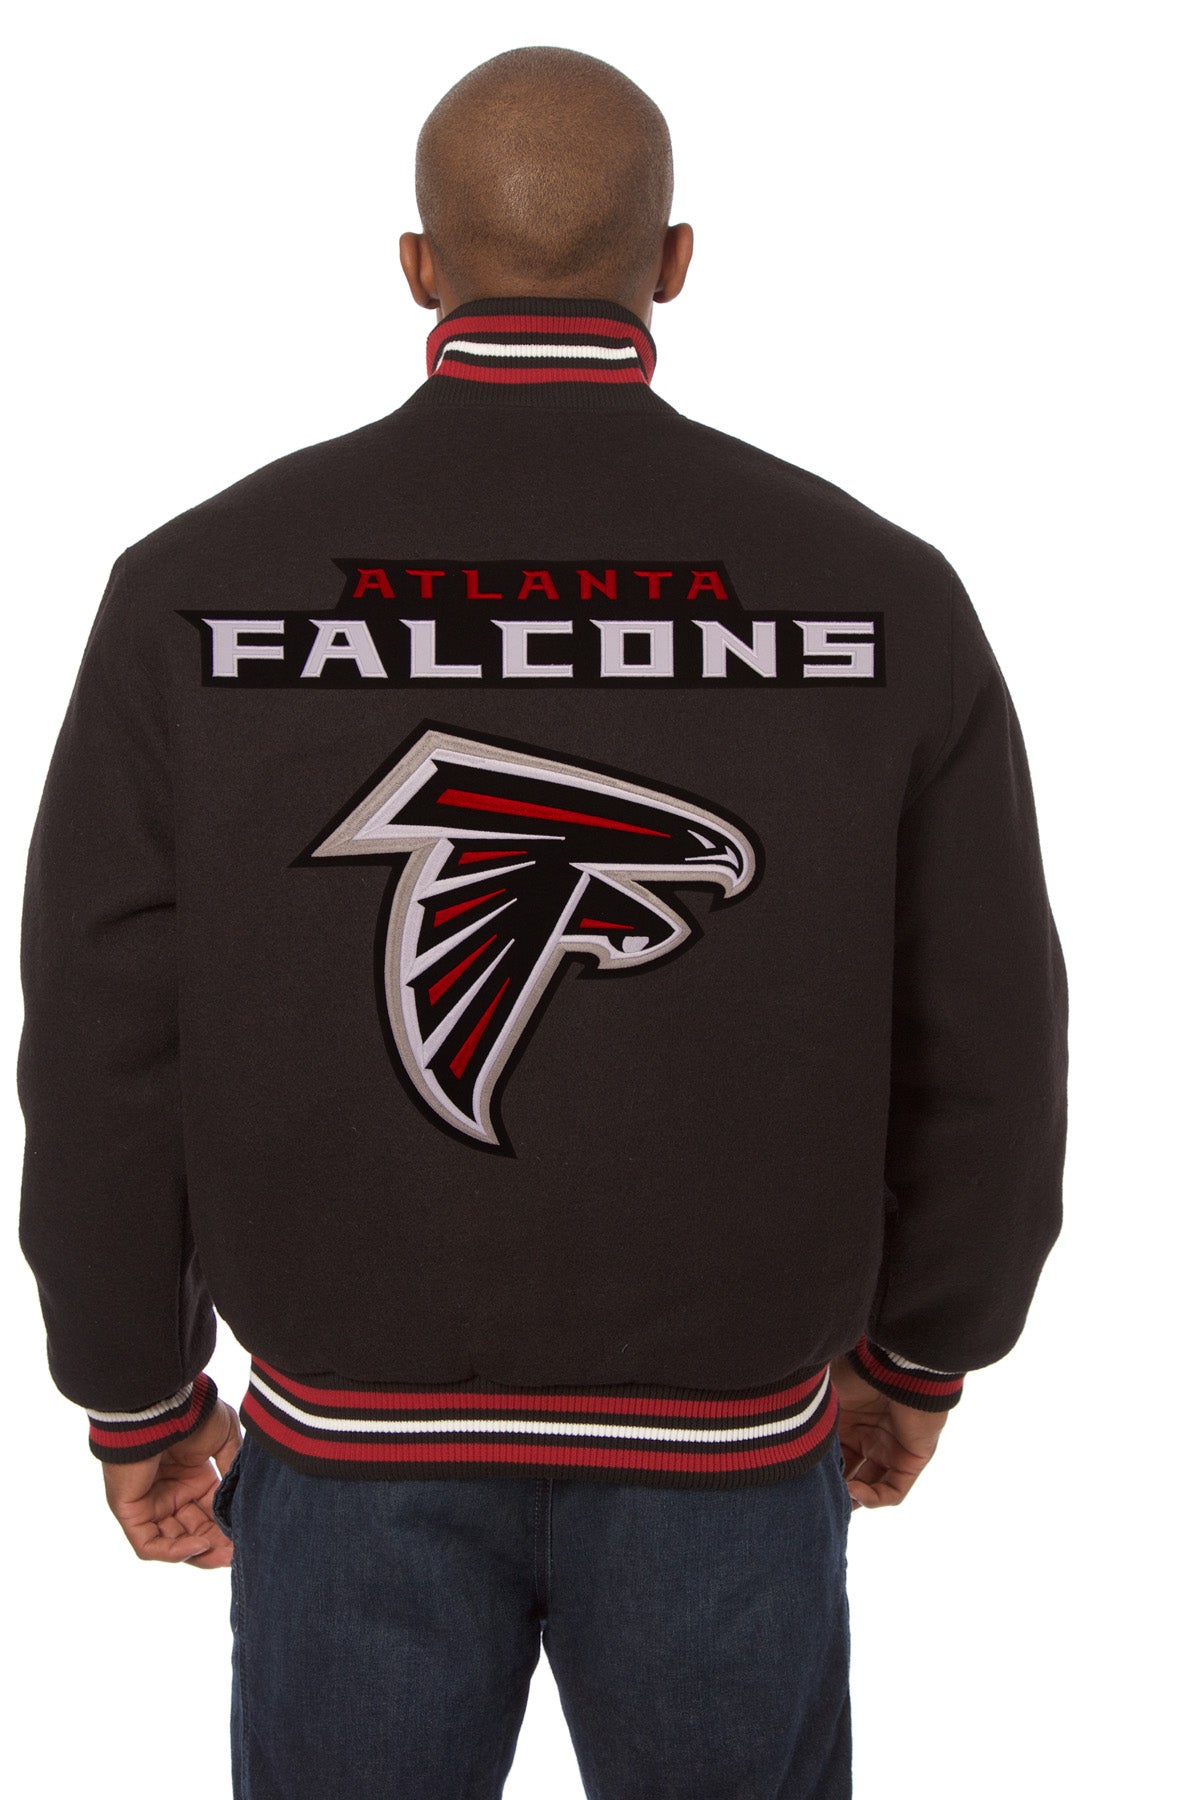 Atlanta Falcons Embroidered Wool Jacket